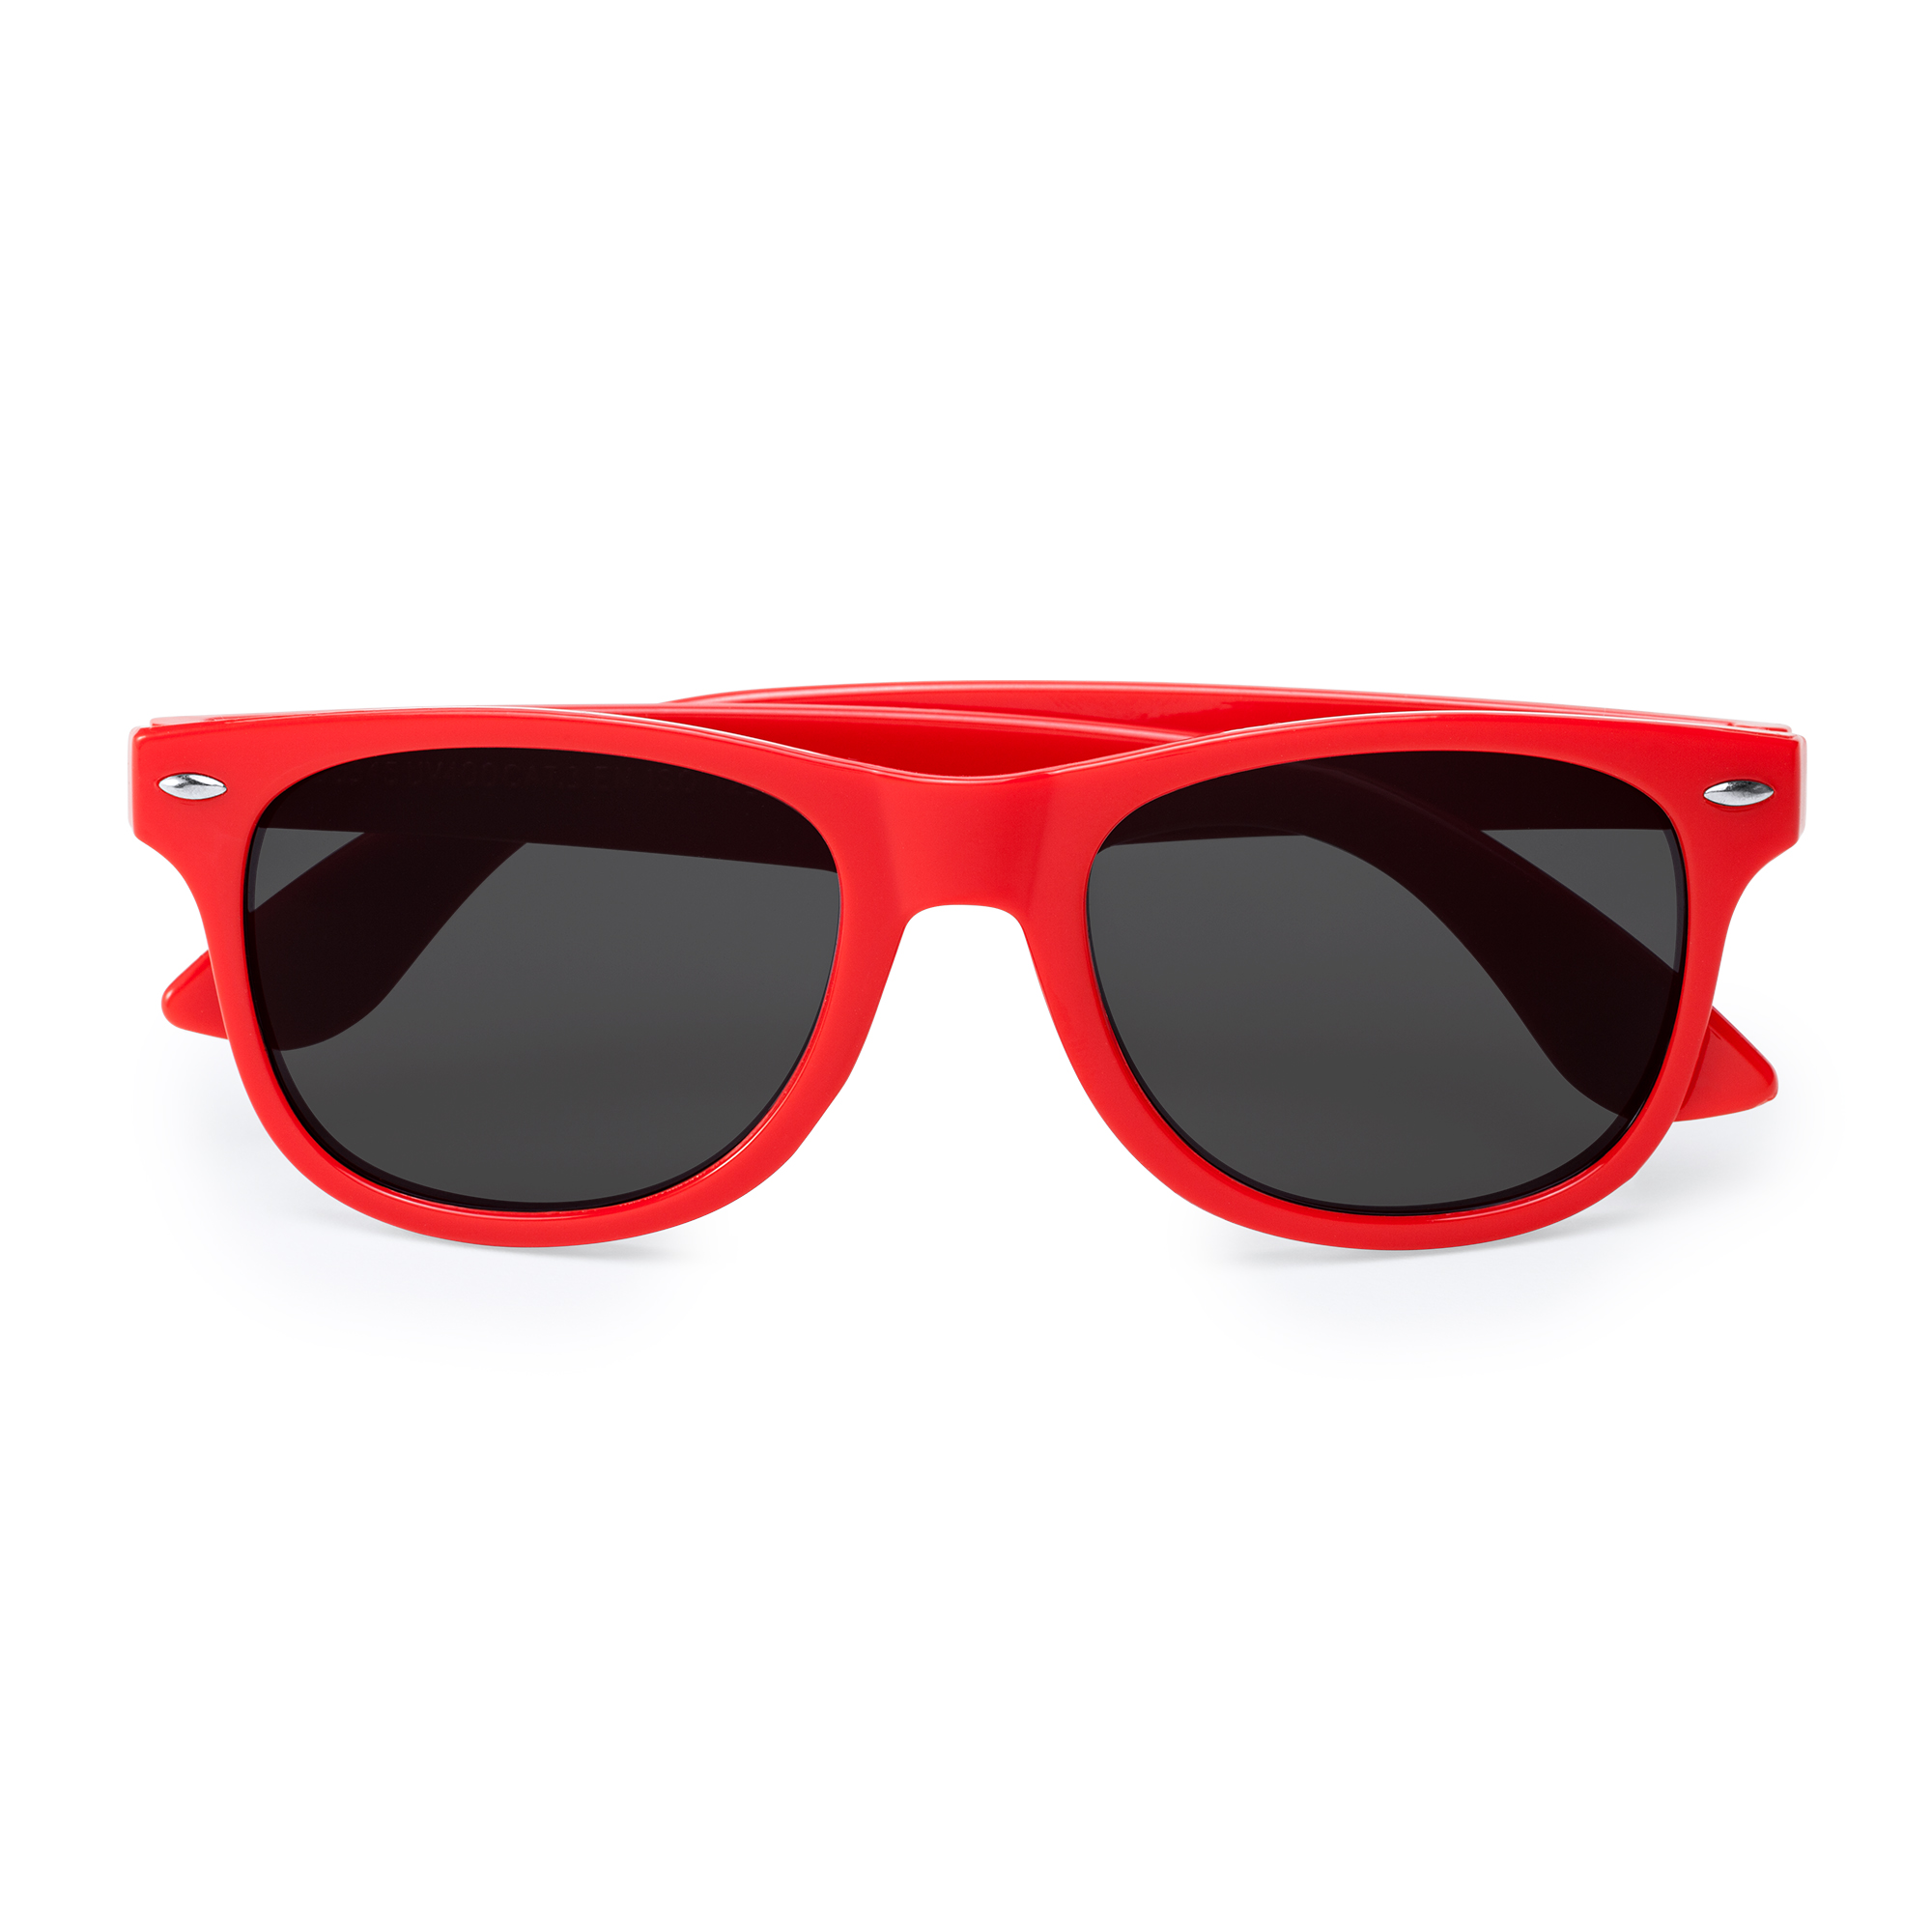 6012-sun-occhiali-da-sole-protezione-uv400-rosso.jpg